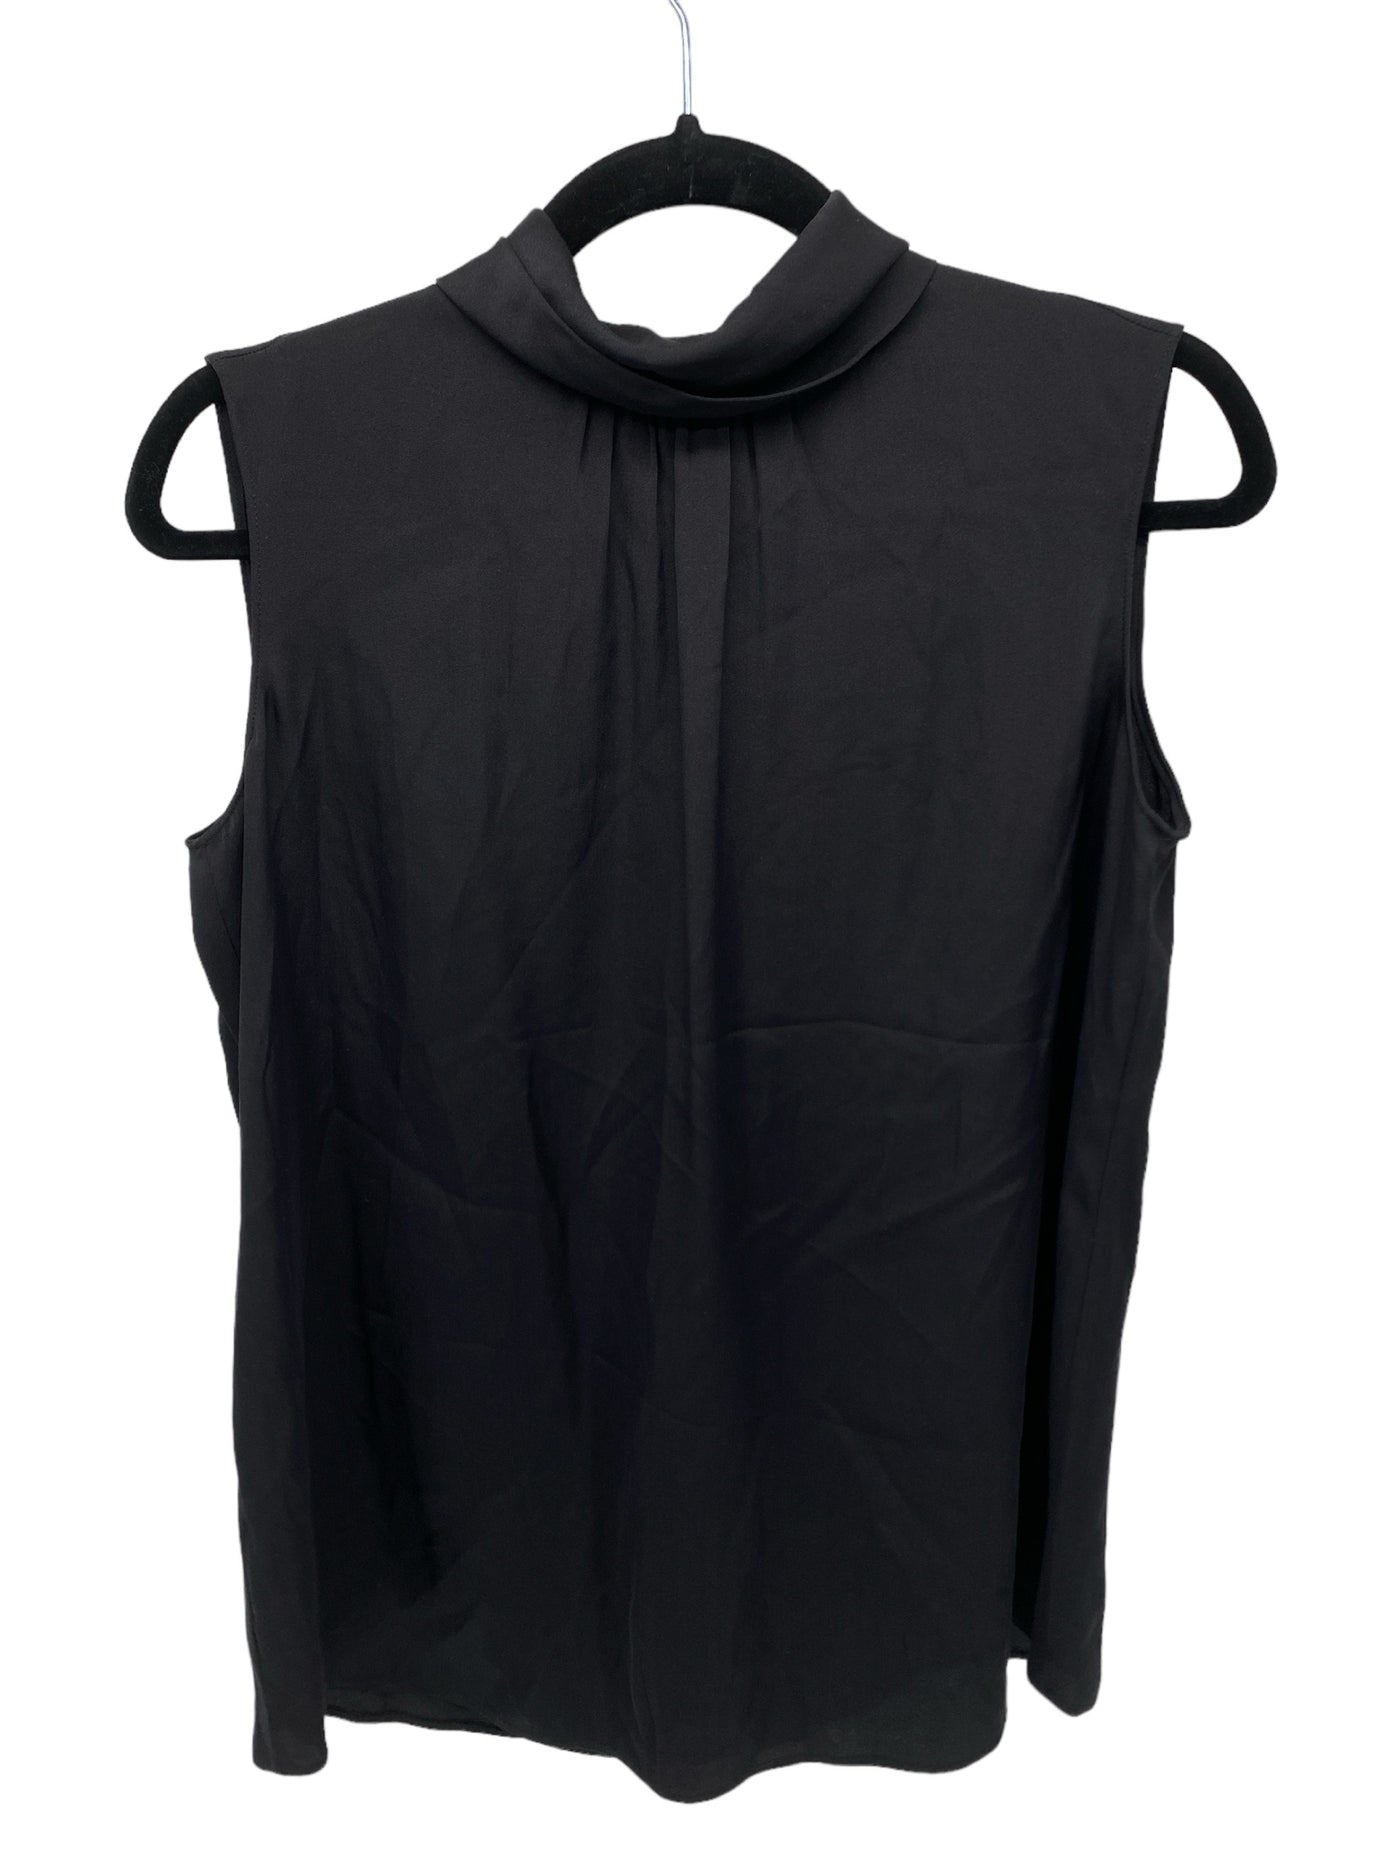 Armani Collection Misses Size 8 Black SL Blouse